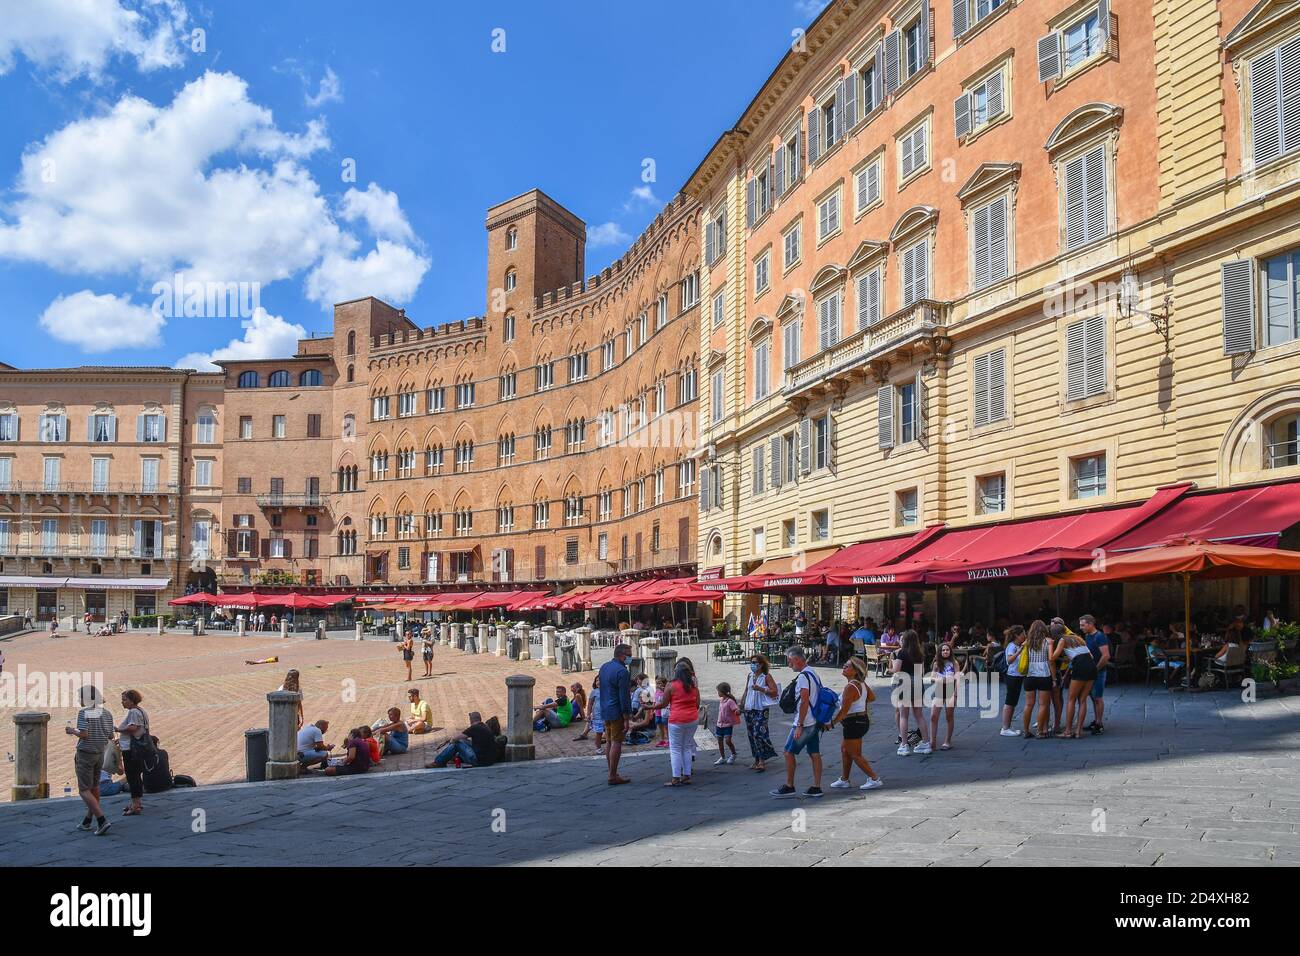 Vue sur la place Piazza del Campo dans le centre historique de Sienne, site classé au patrimoine mondial de l'UNESCO, avec des gens et des touristes en été, Toscane, Italie Banque D'Images